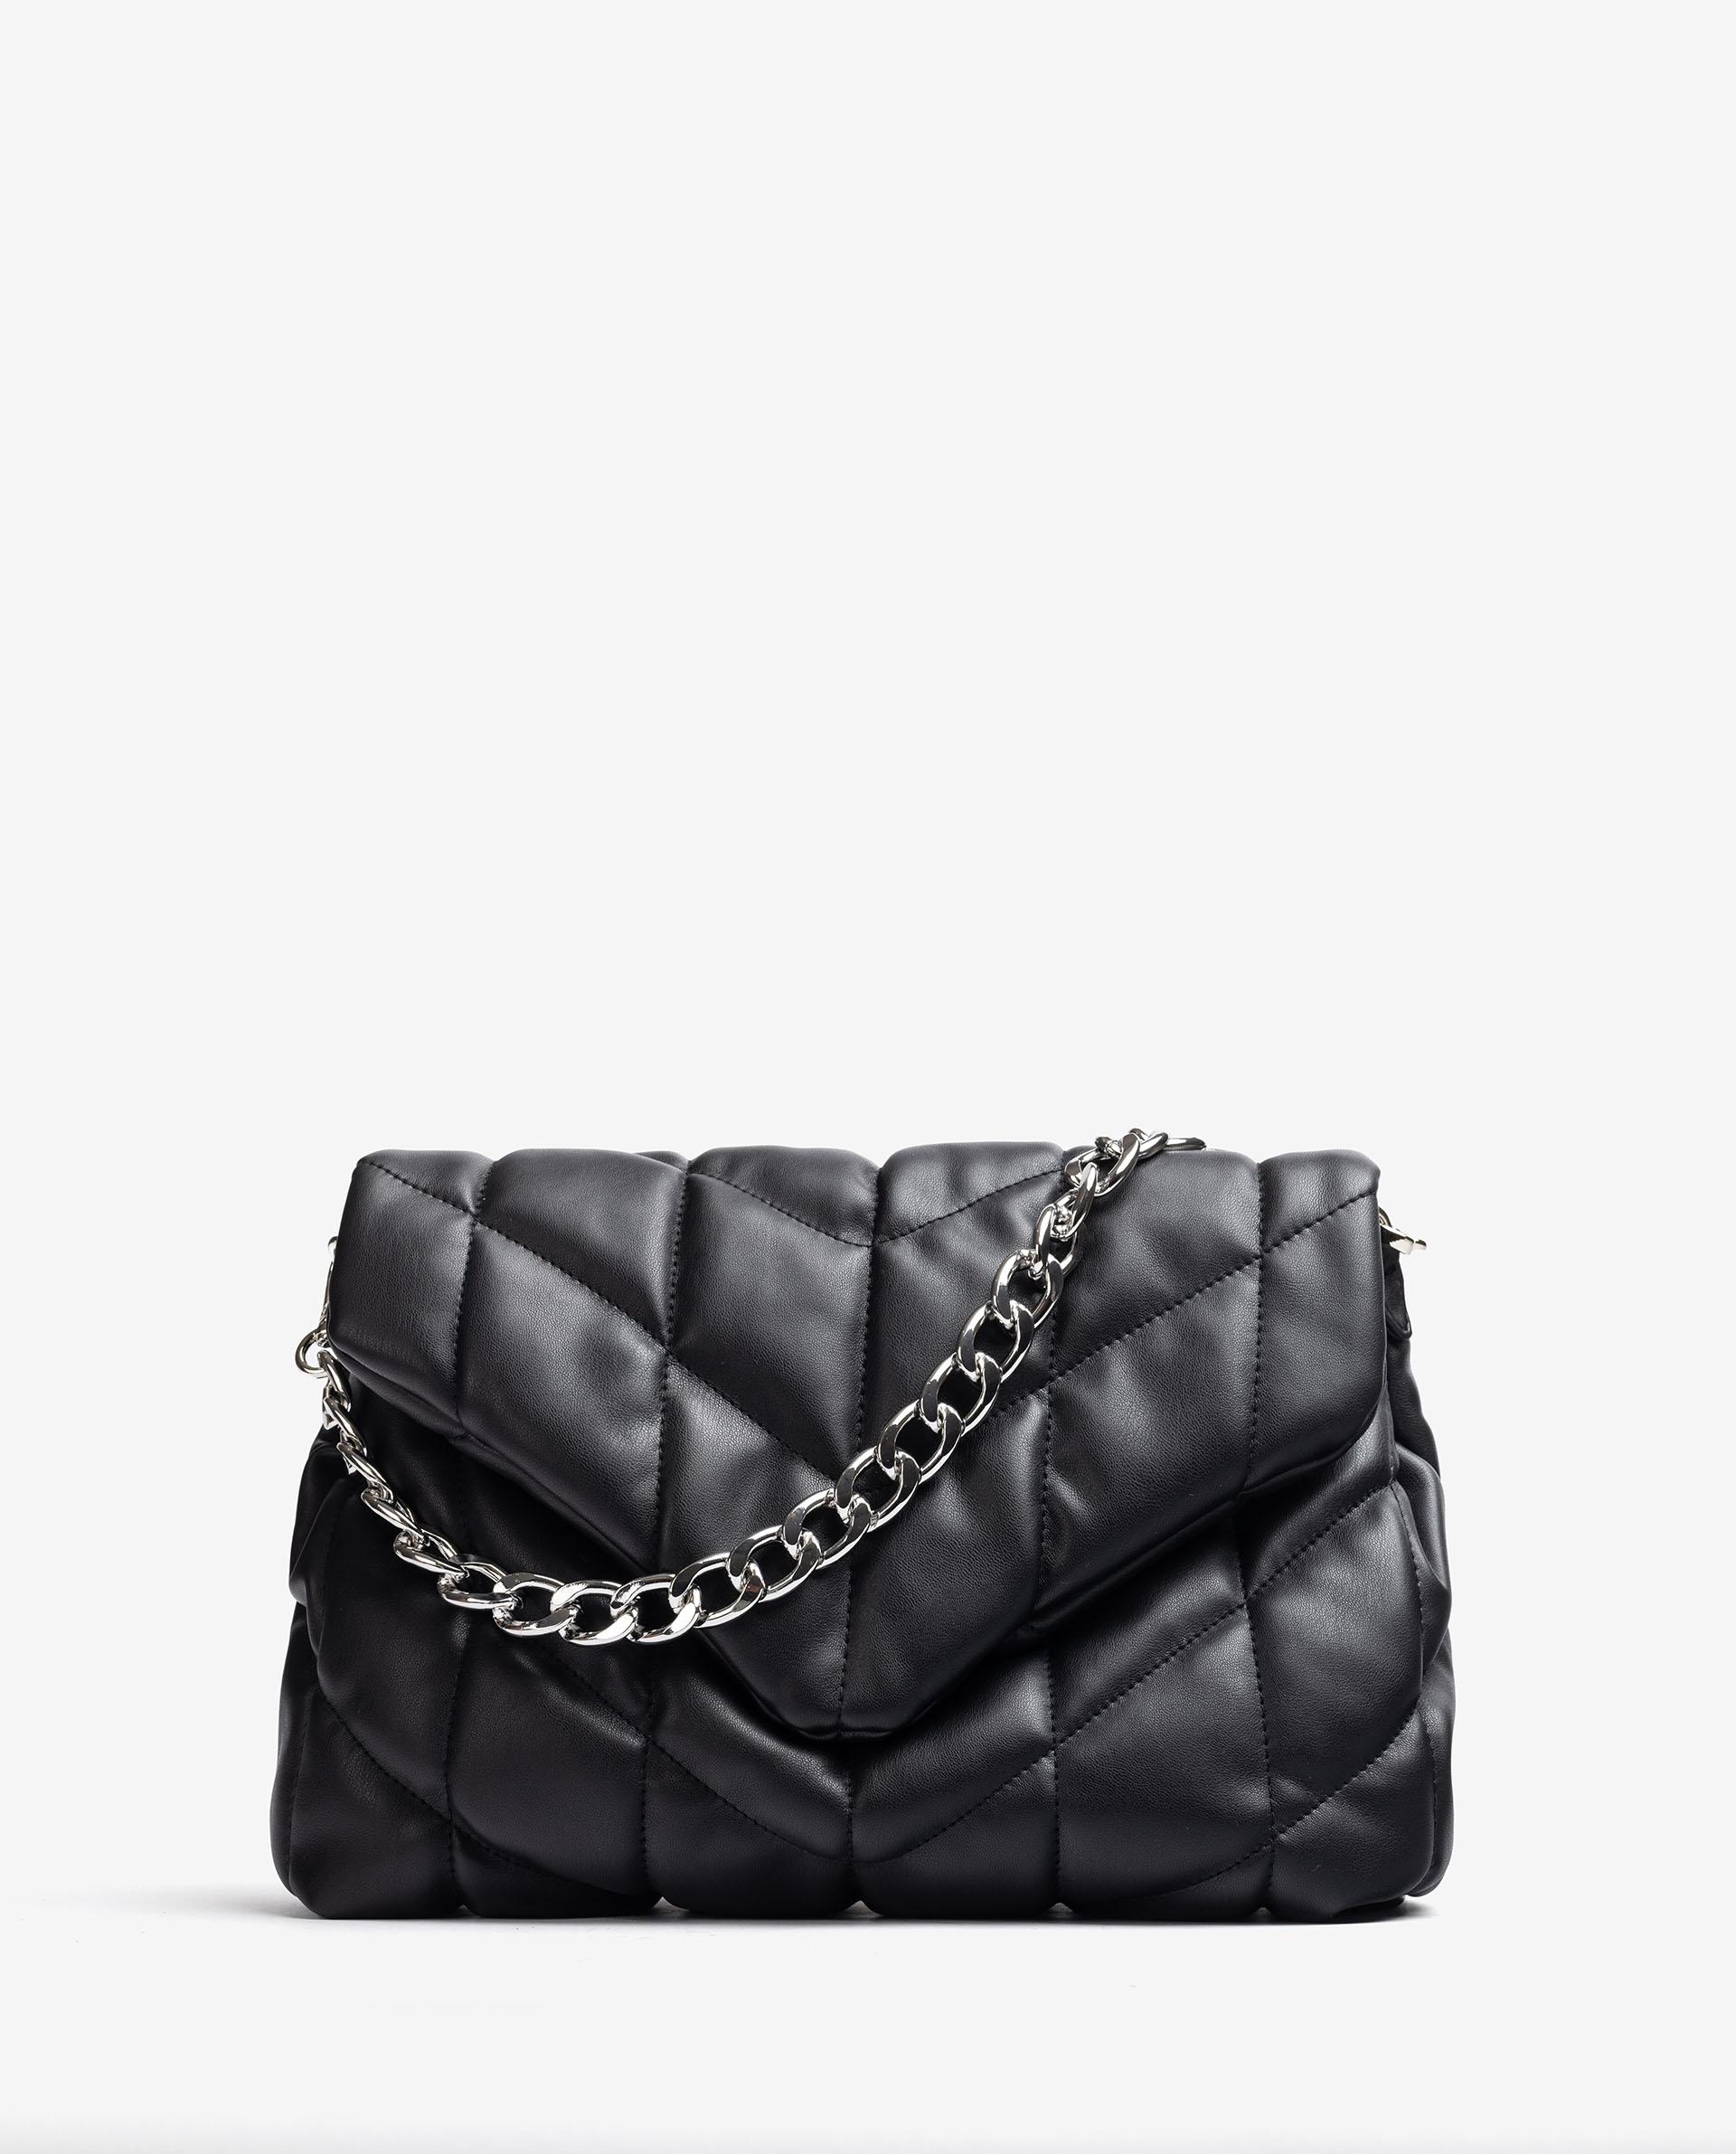 Unisa Large handbags ZKAMALI_SUP black